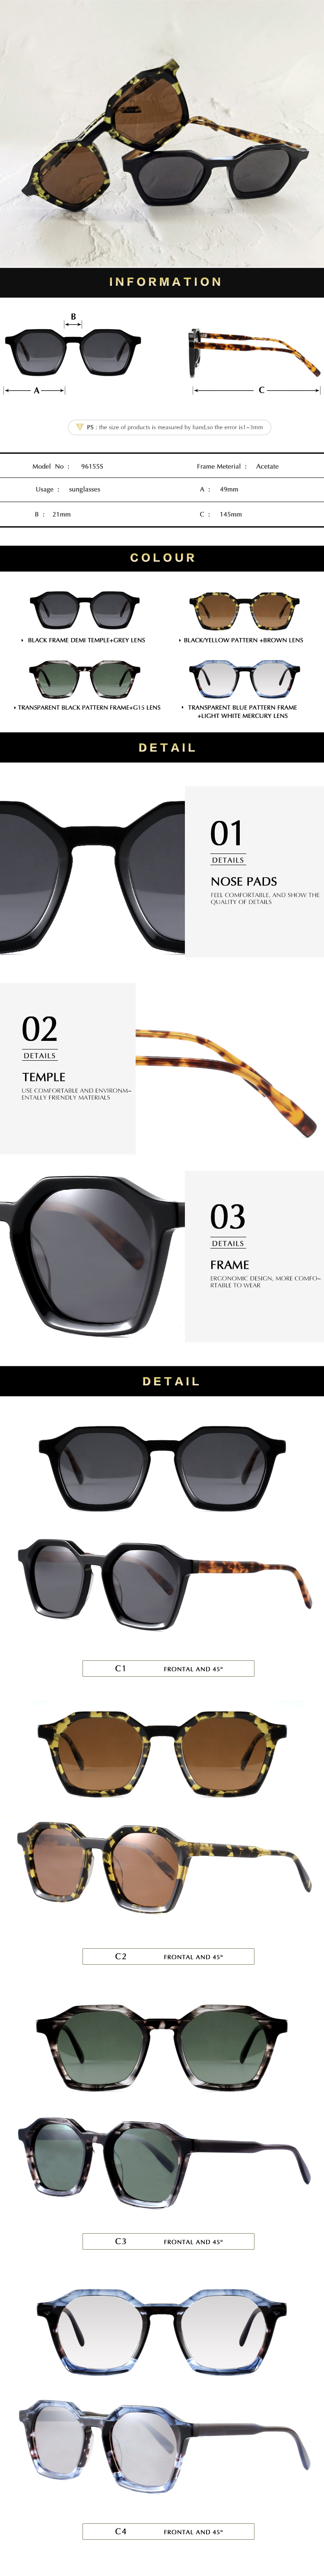 luxury acetate sunglasses